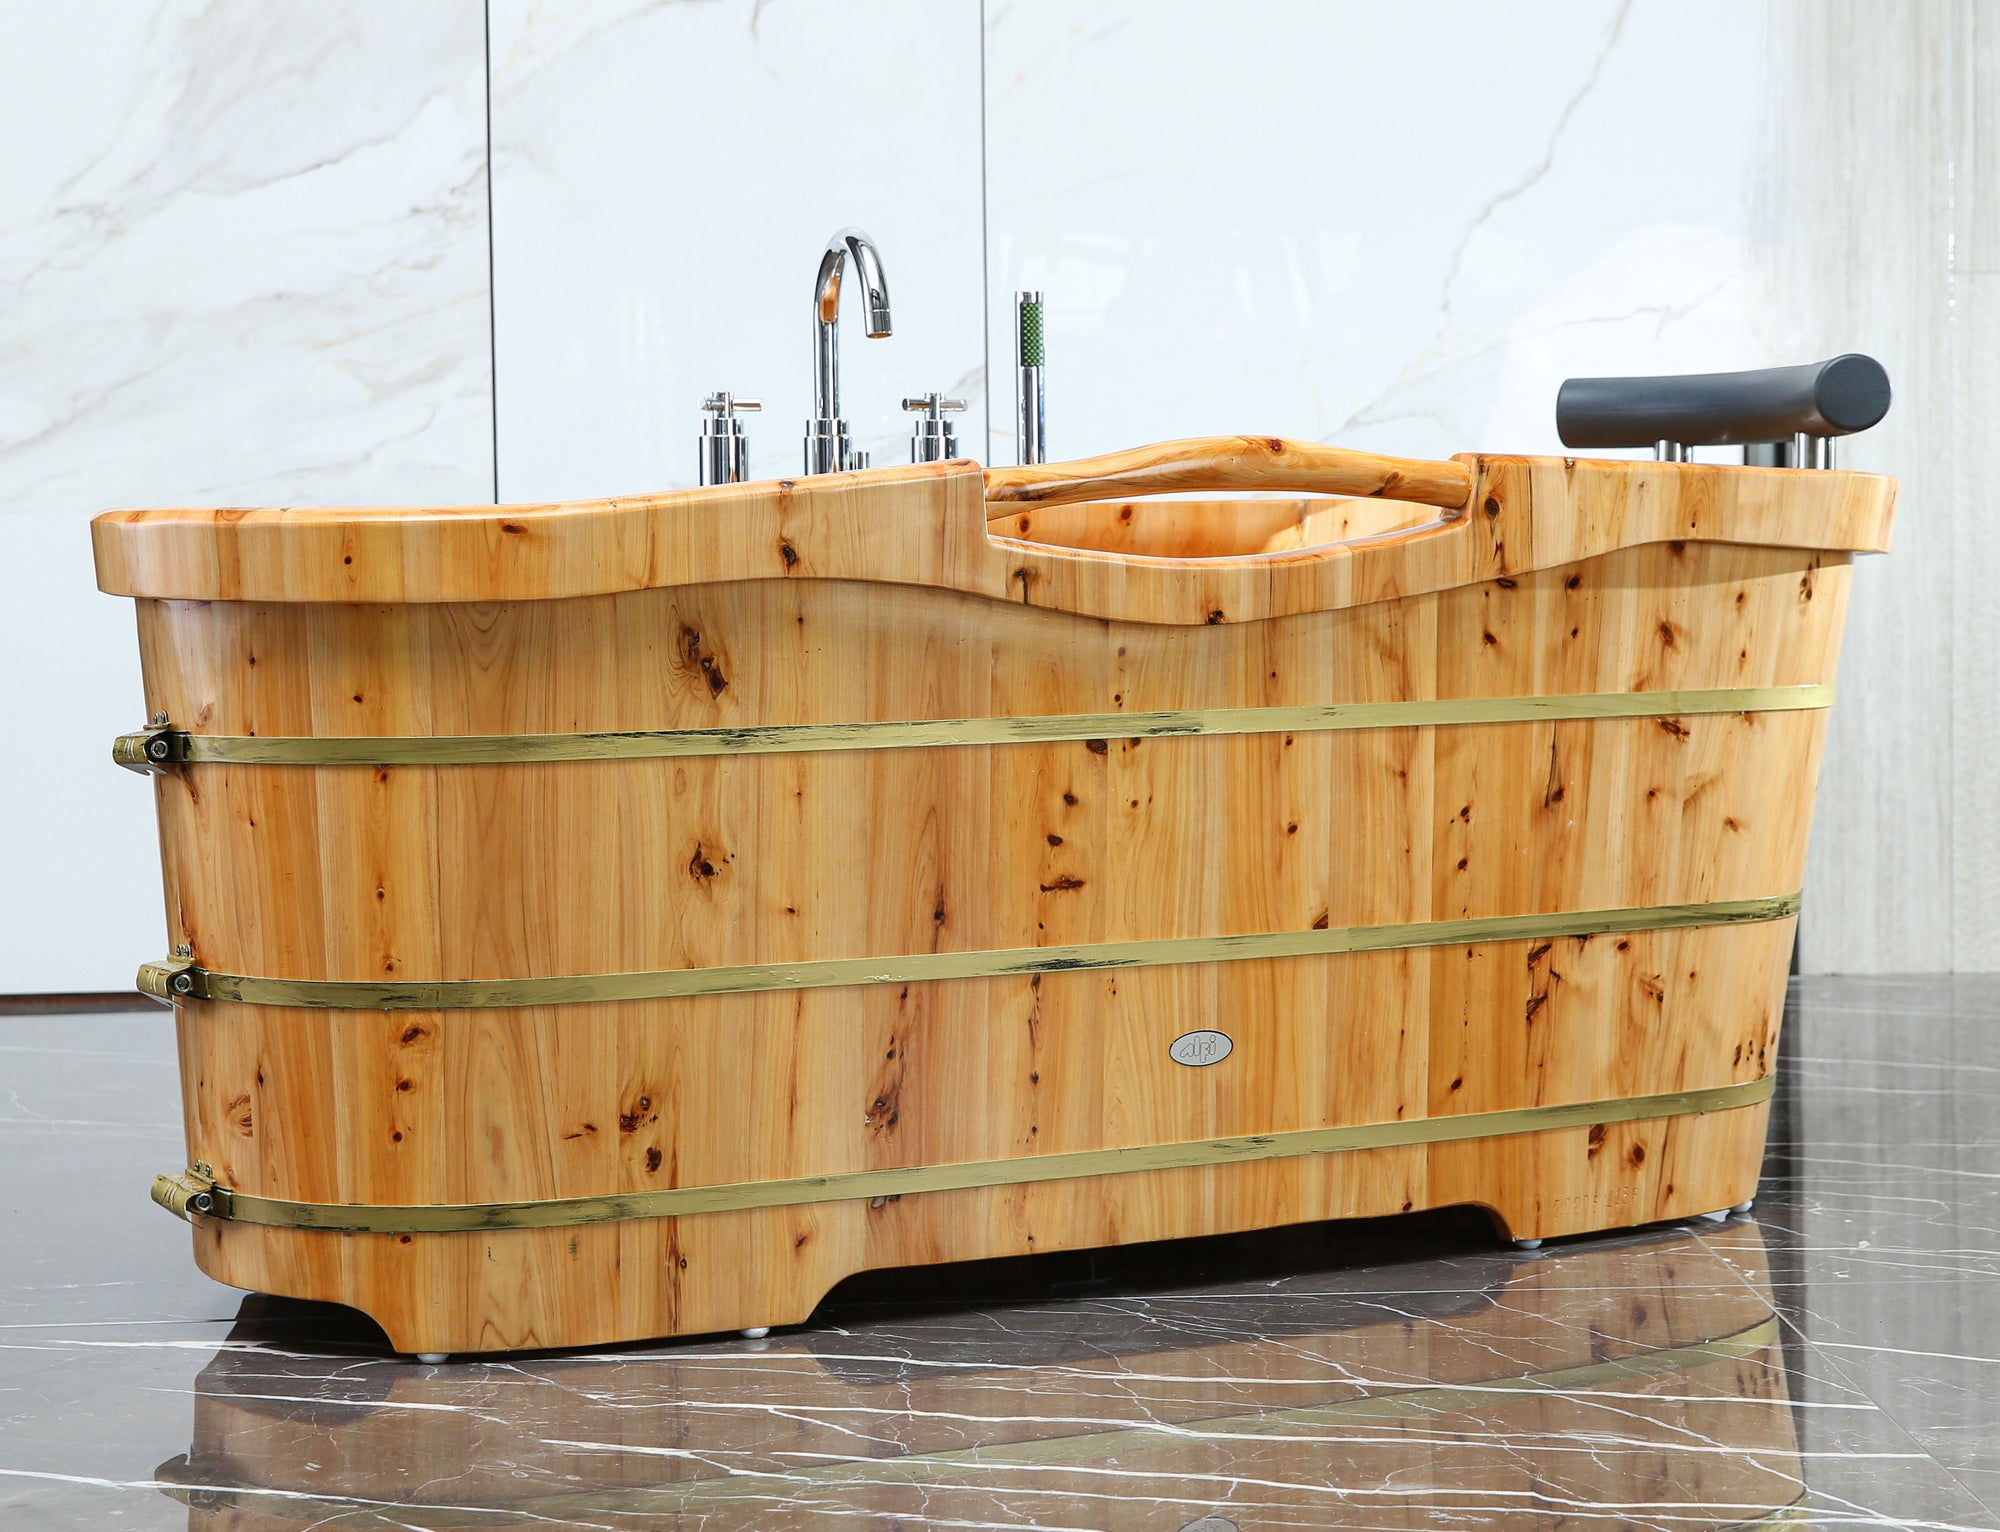 ALFI 61" Free-Standing Cedar Wood Bath Tub with Chrome Tub Filler